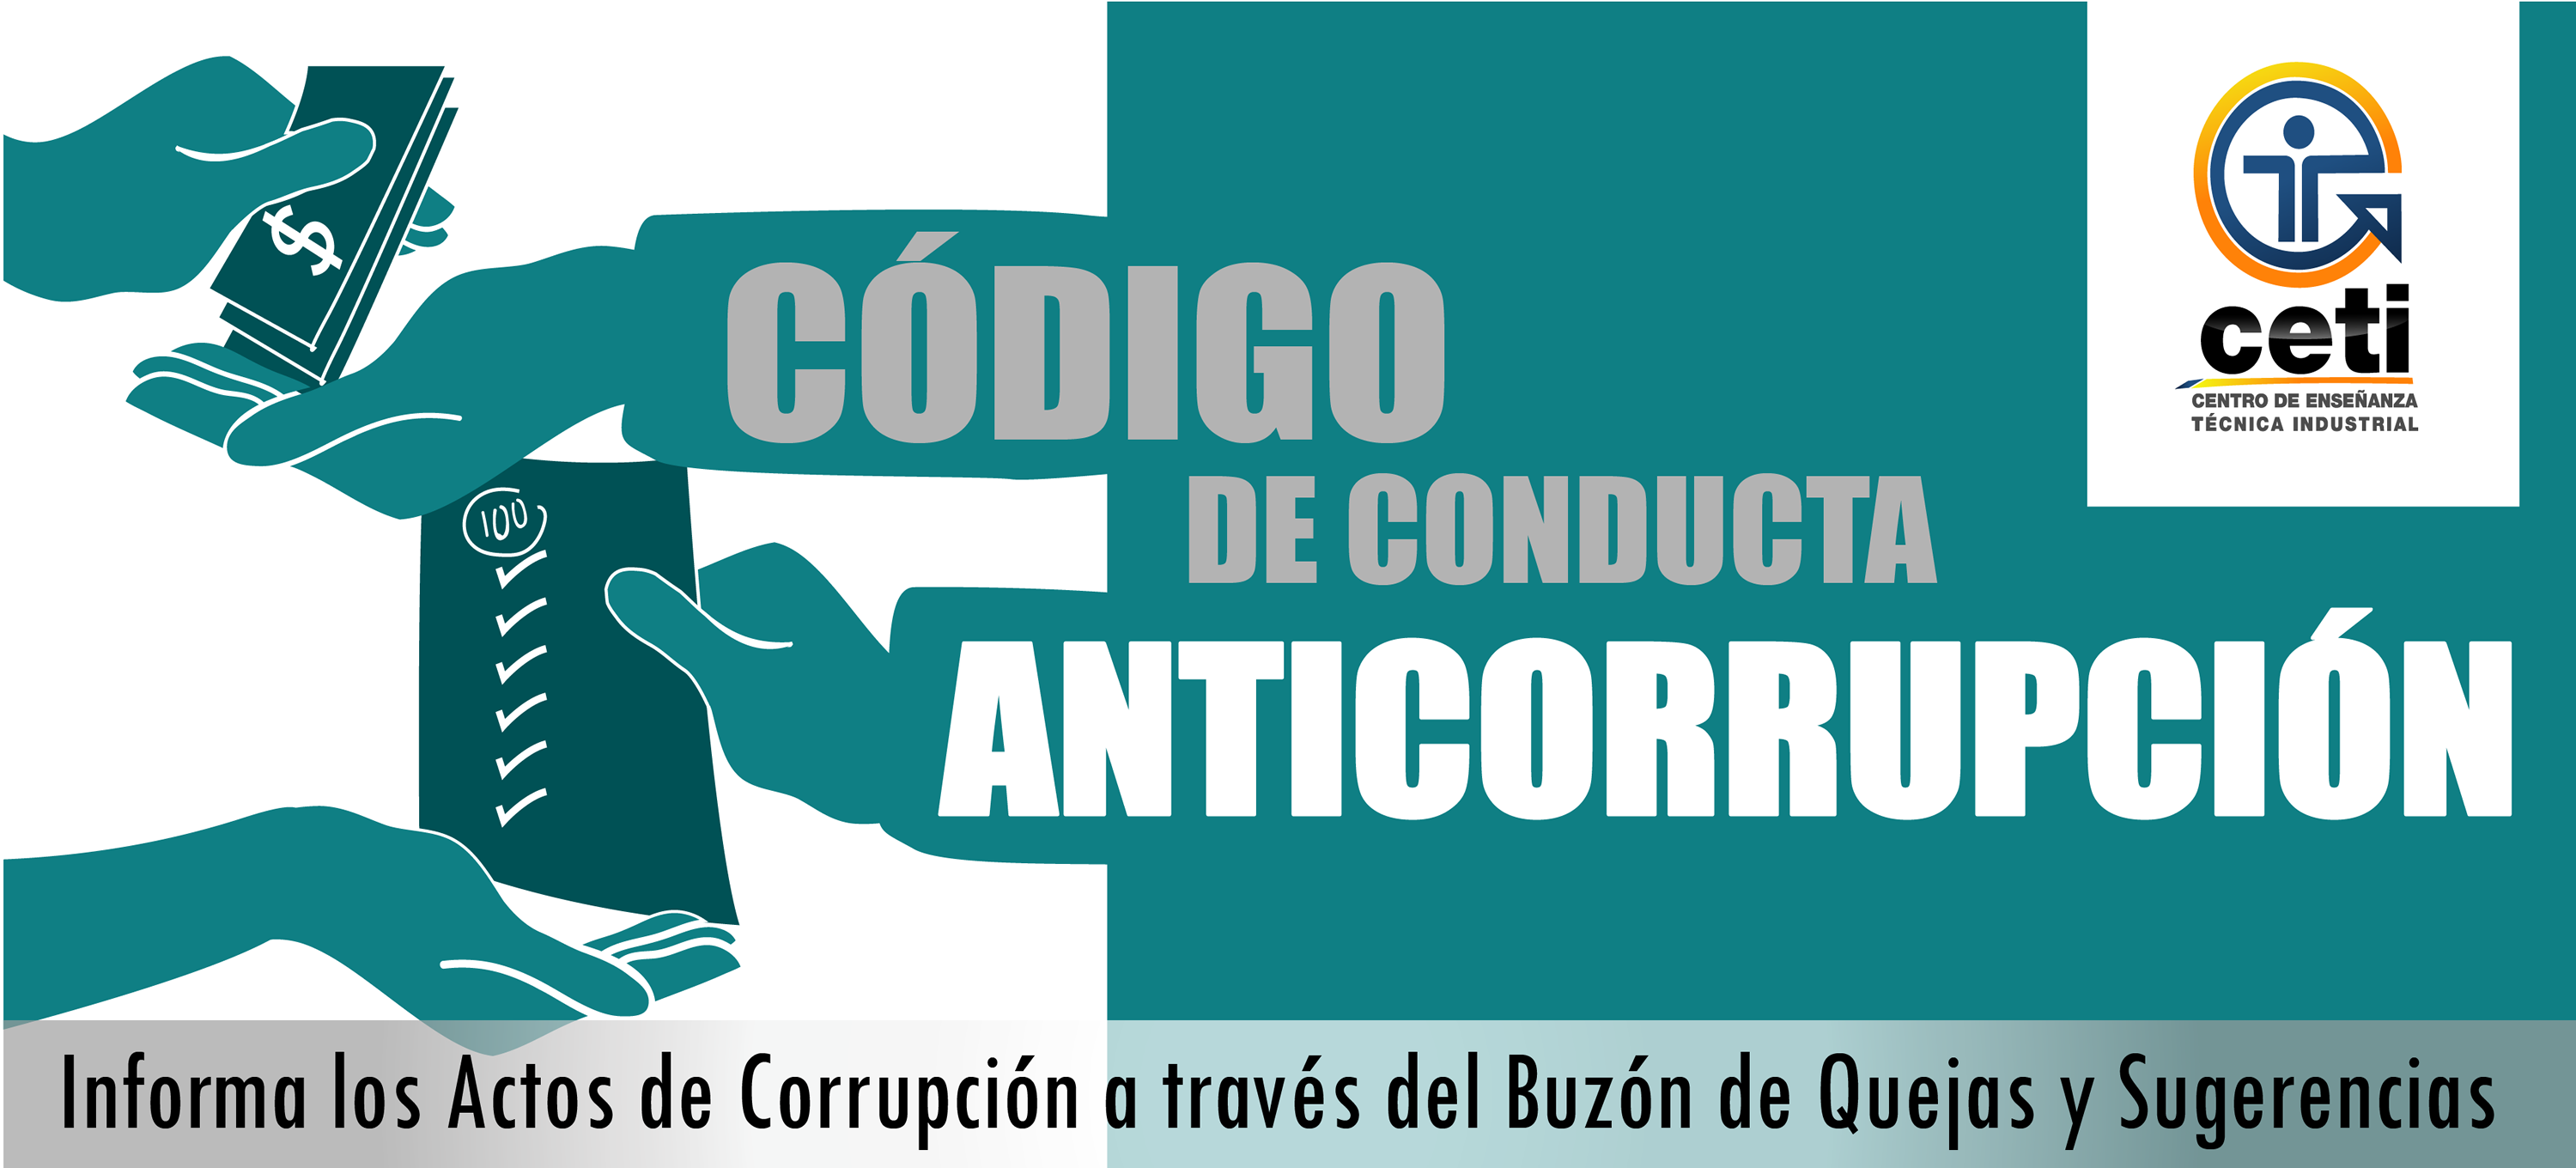 Anticorrupcion